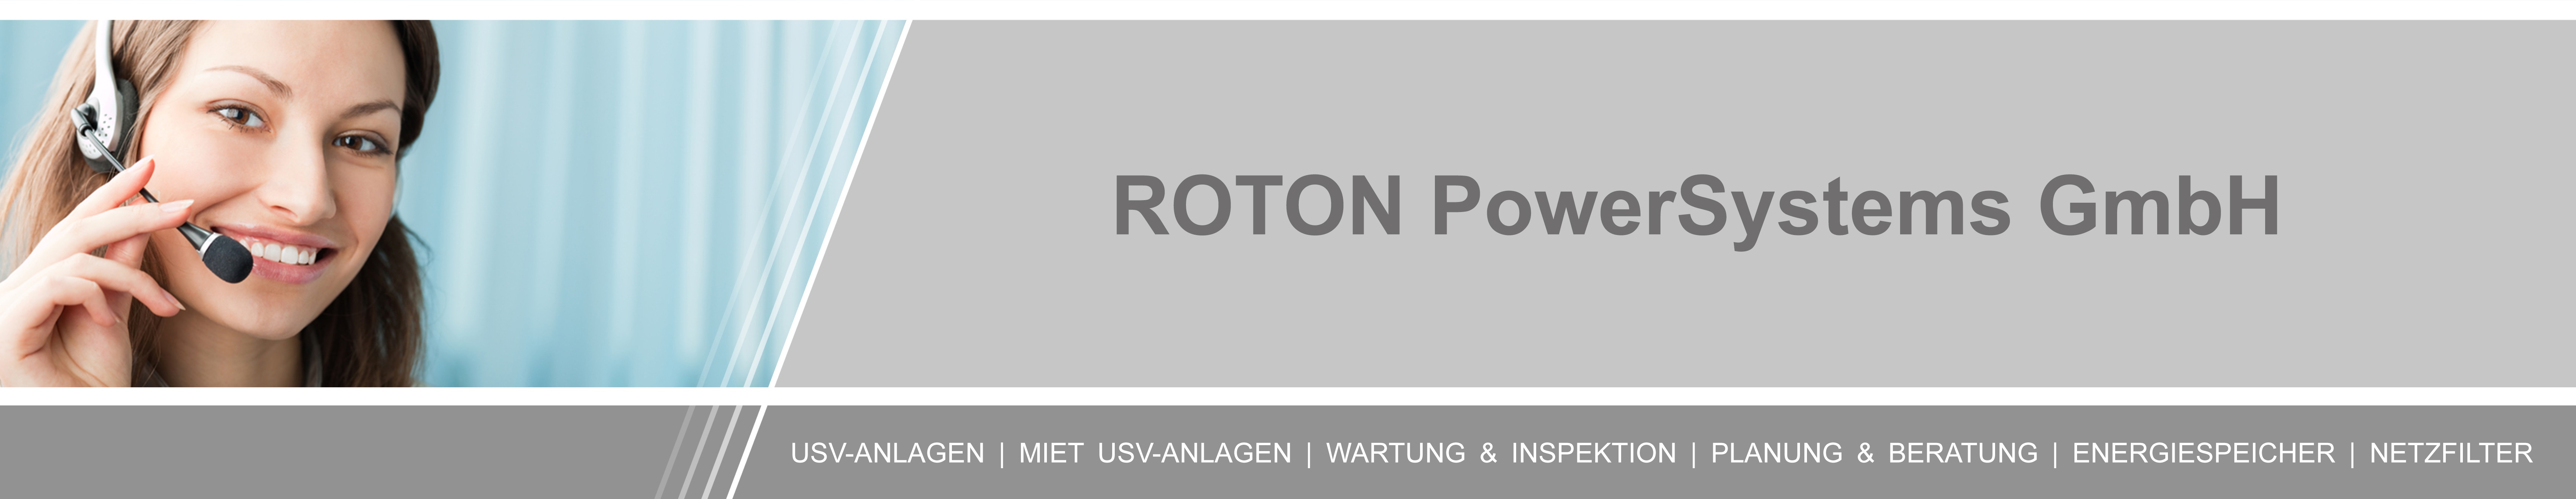 Service - ROTON PowerSystems GmbH 